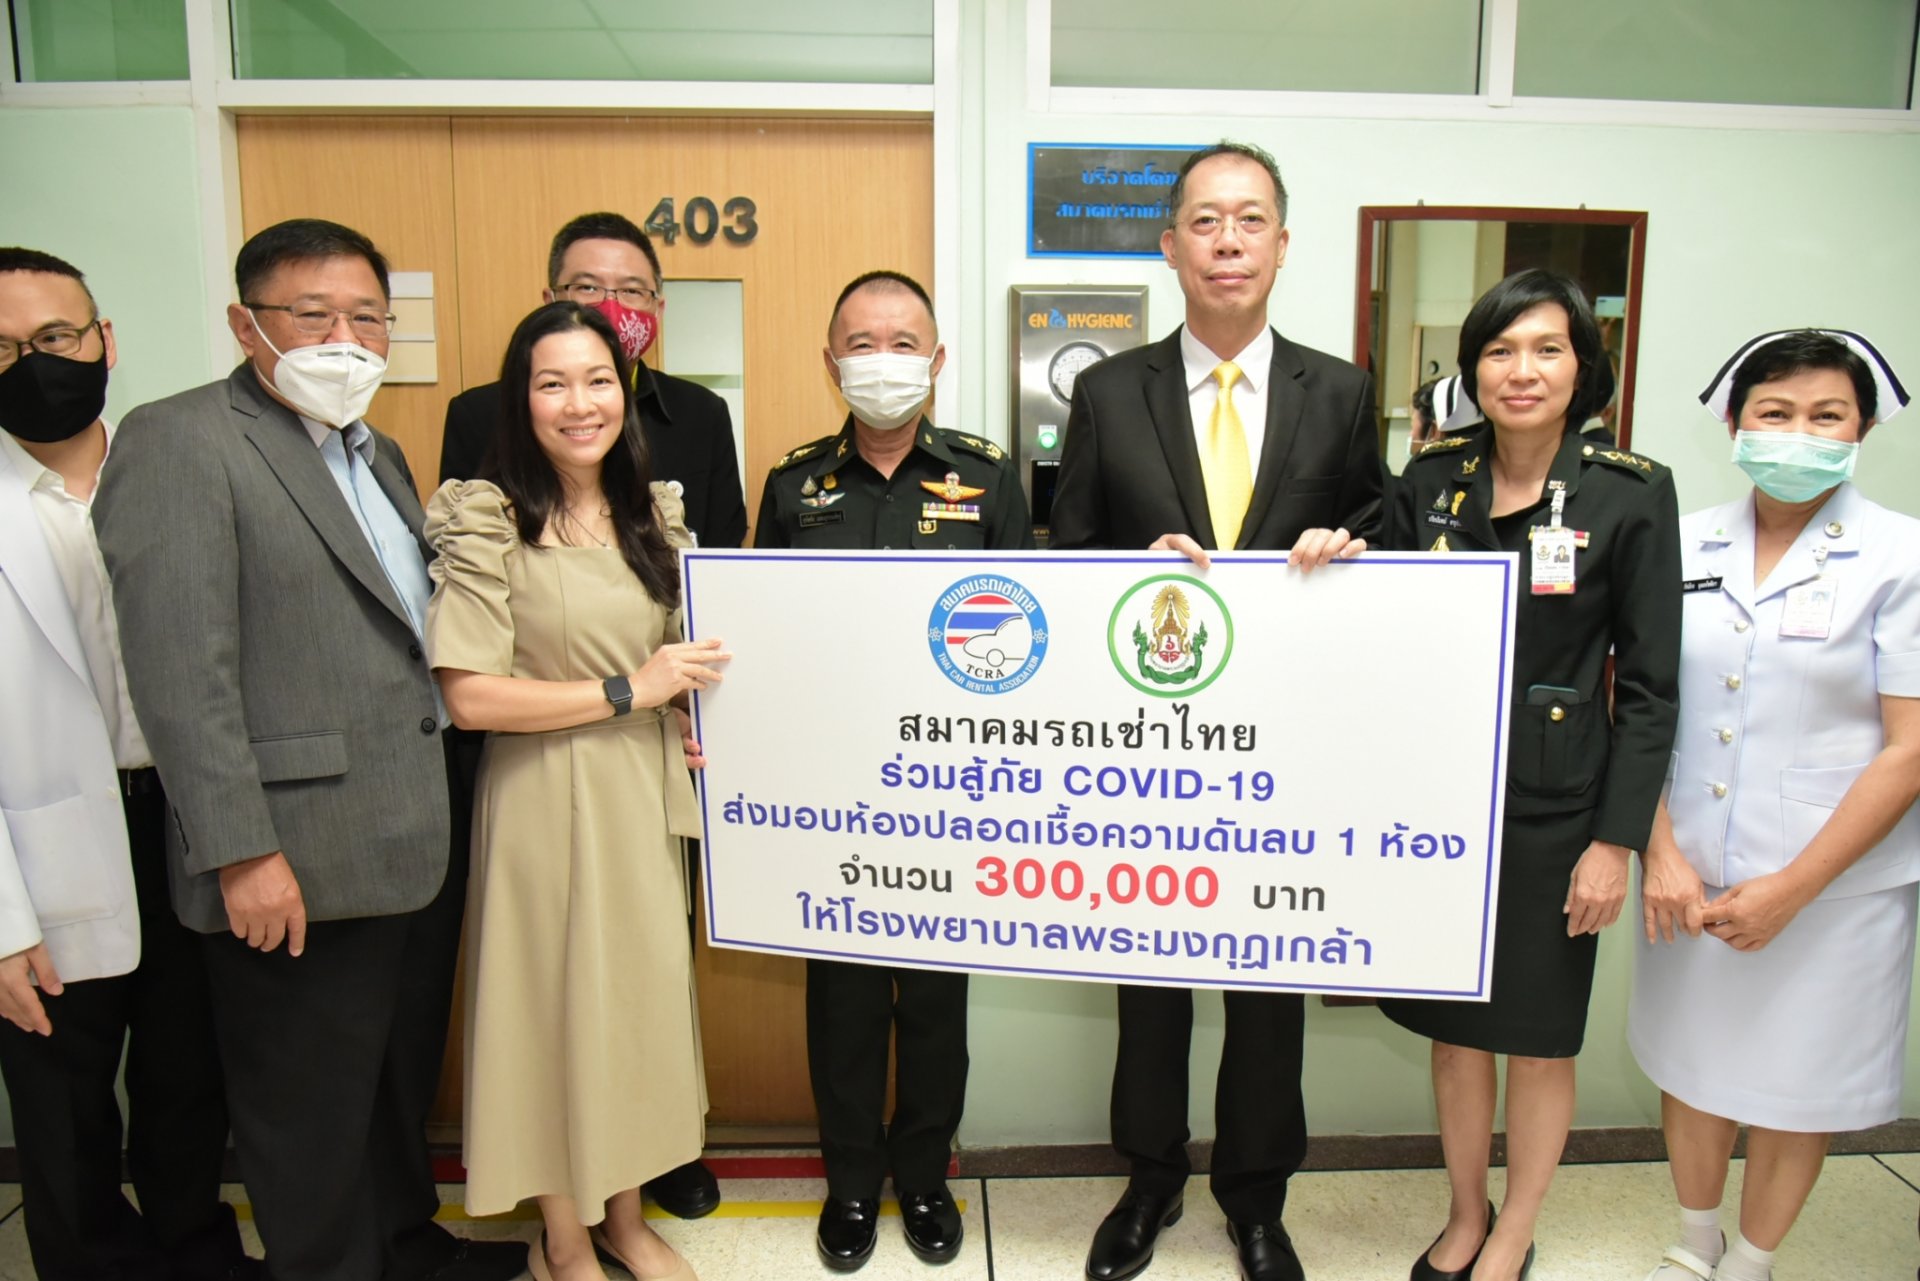 สมาคมรถเช่าไทยร่วมสู้ภัย COVID-19 ส่งมอบห้องปลอดเชื้อความดันลบ ให้กับโรงพยาบาลพระมงกุฎเกล้า